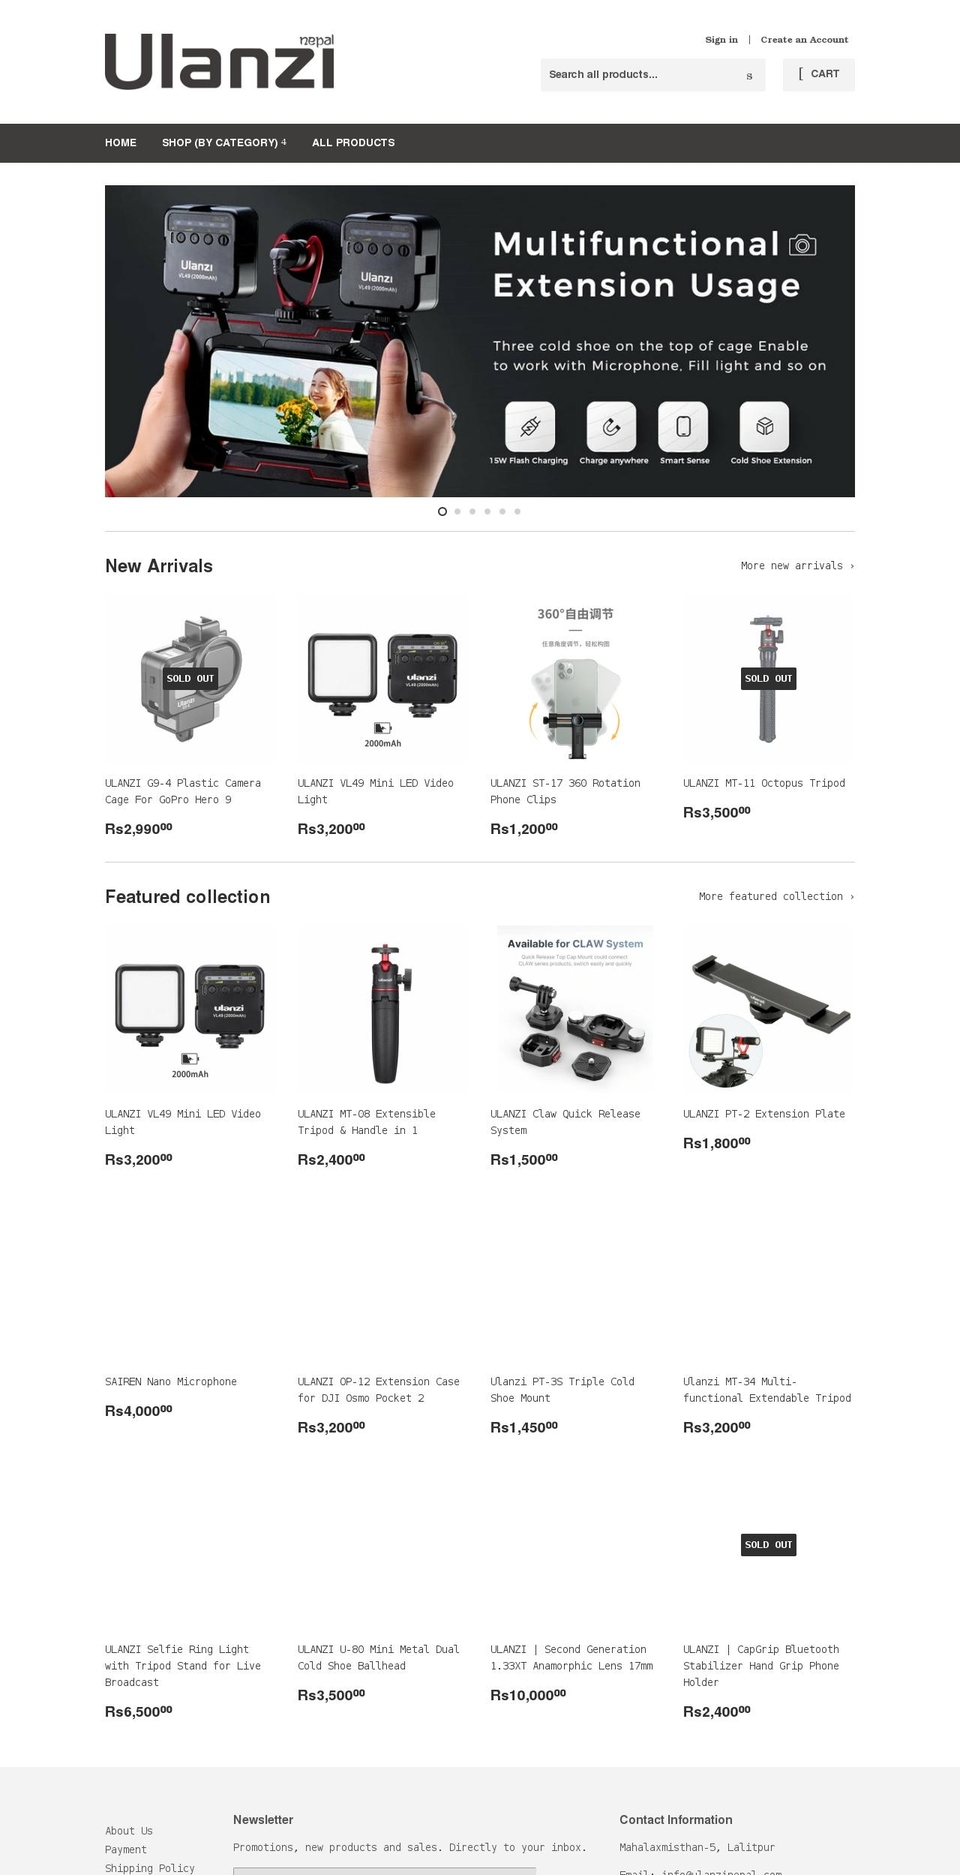 ulanzinepal.com shopify website screenshot